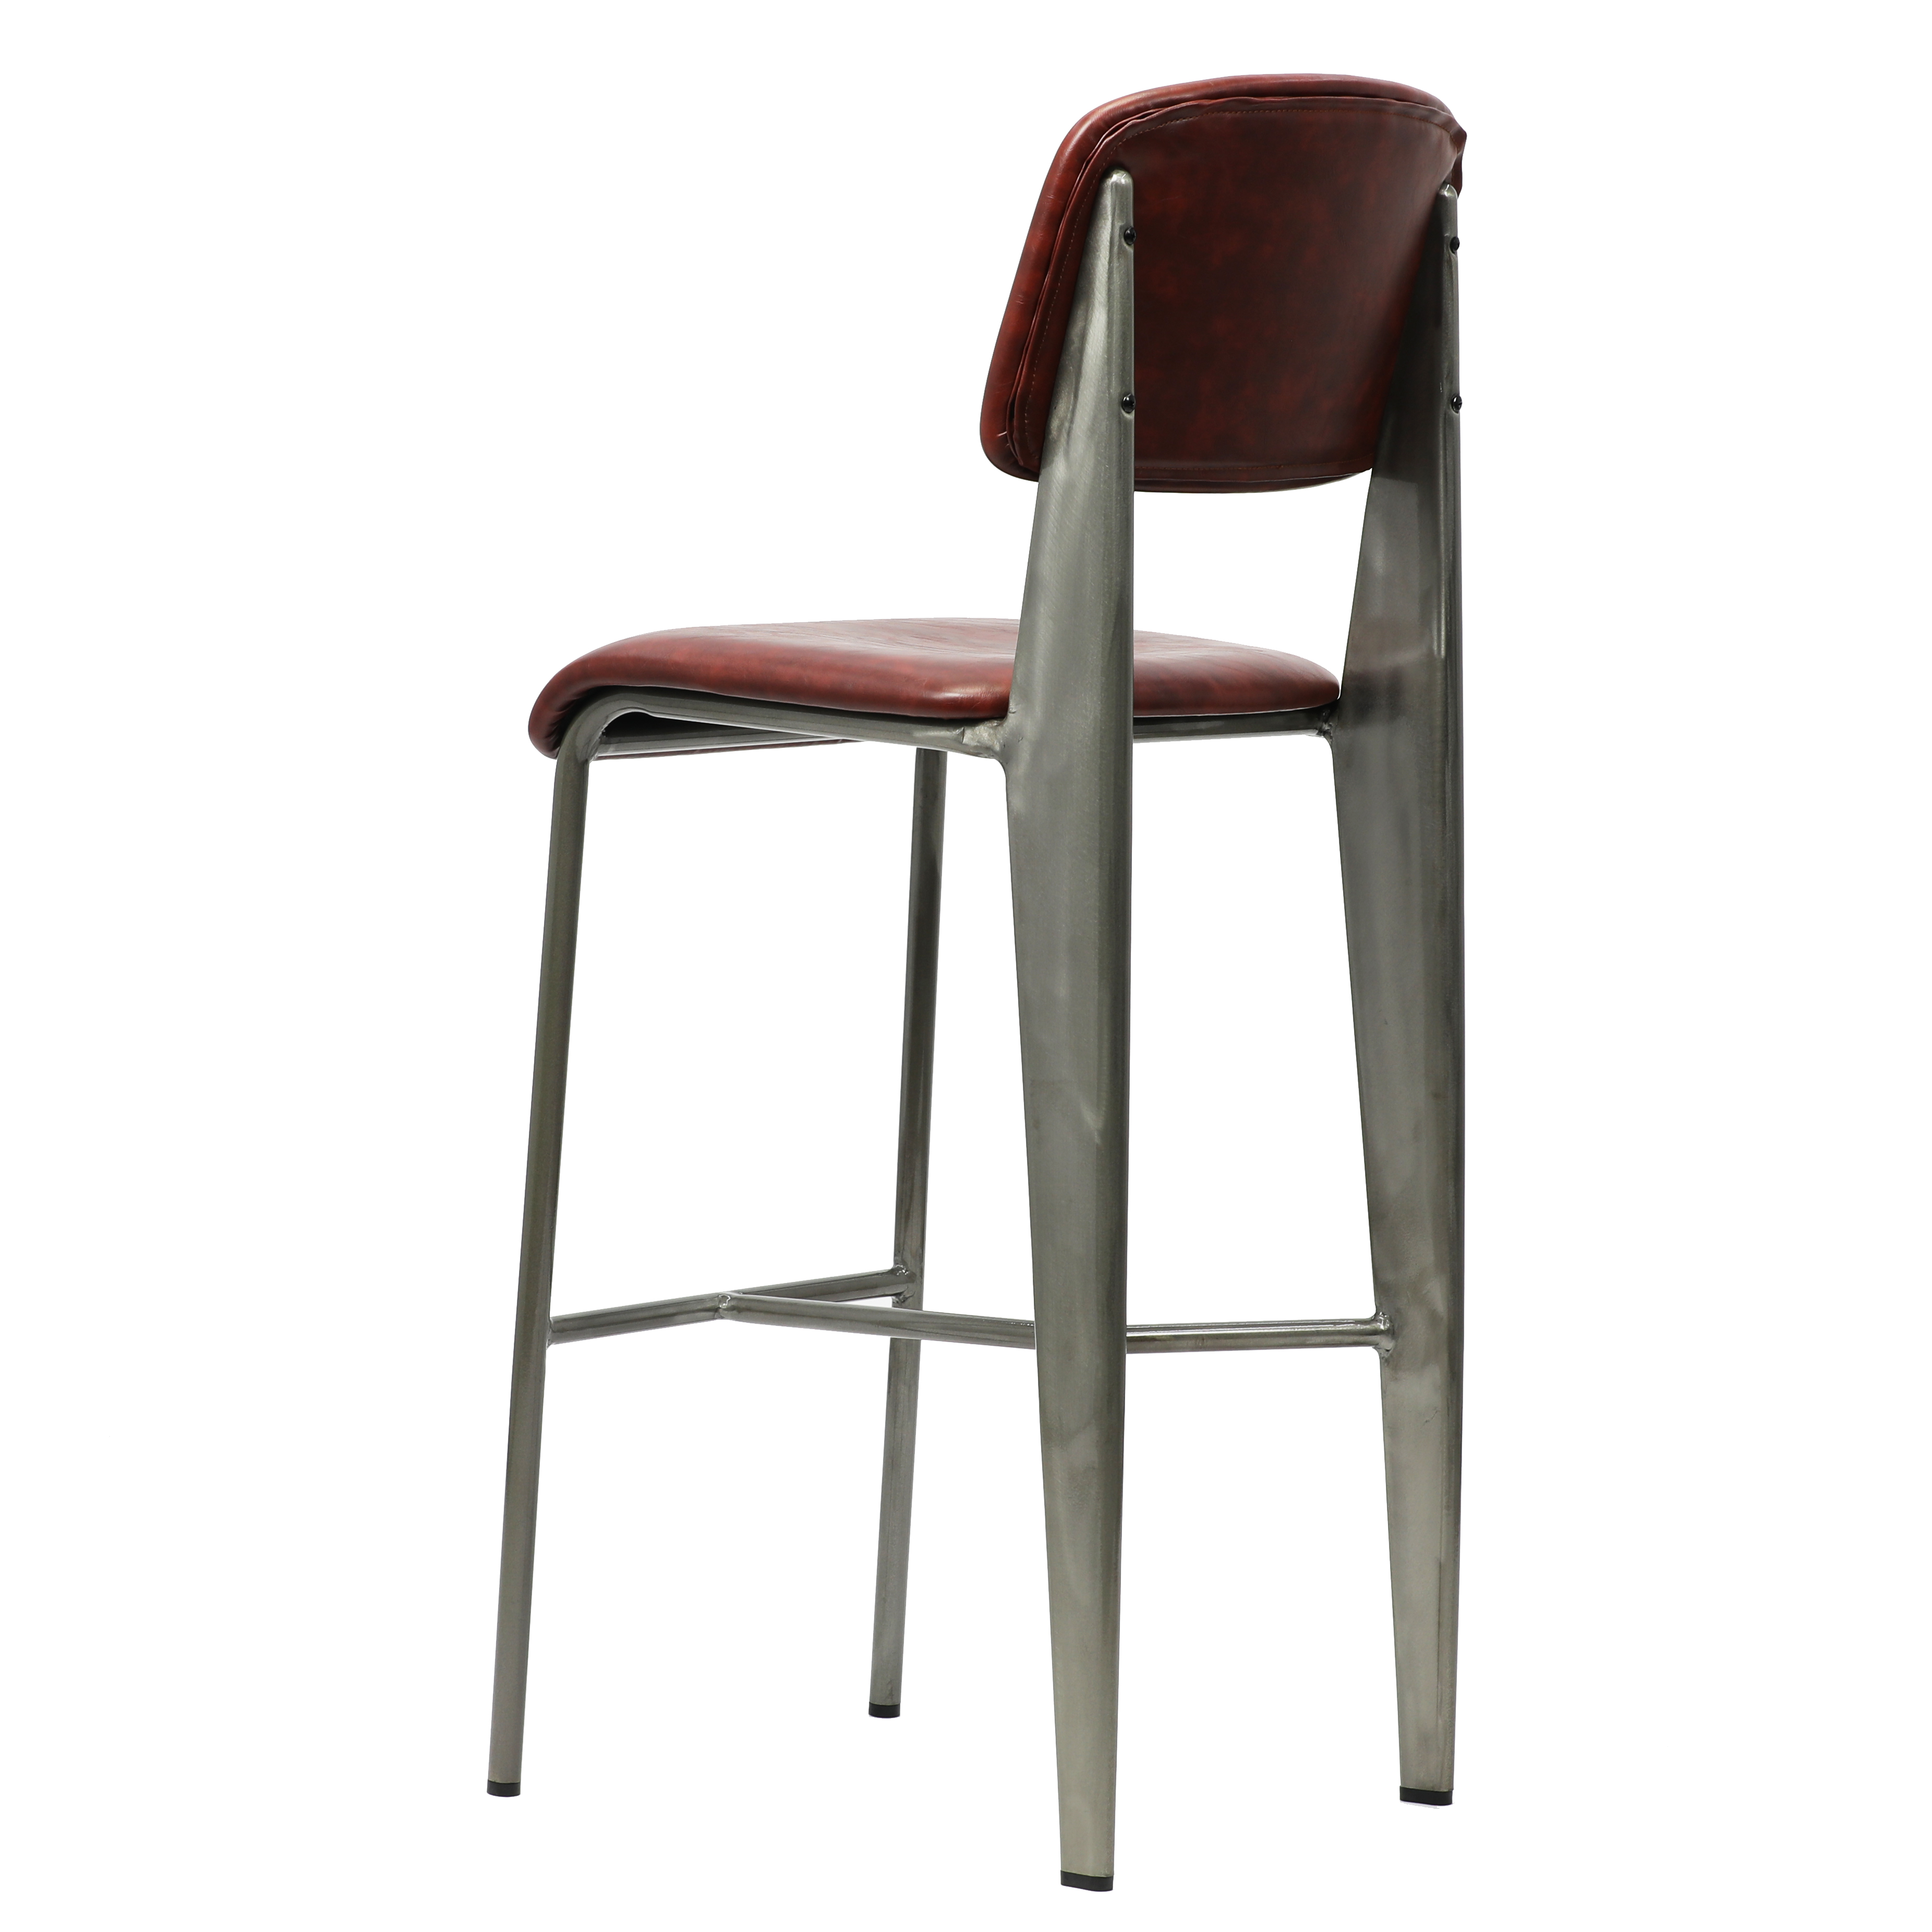 фабрички добавувач стандарден стол за столче за бар